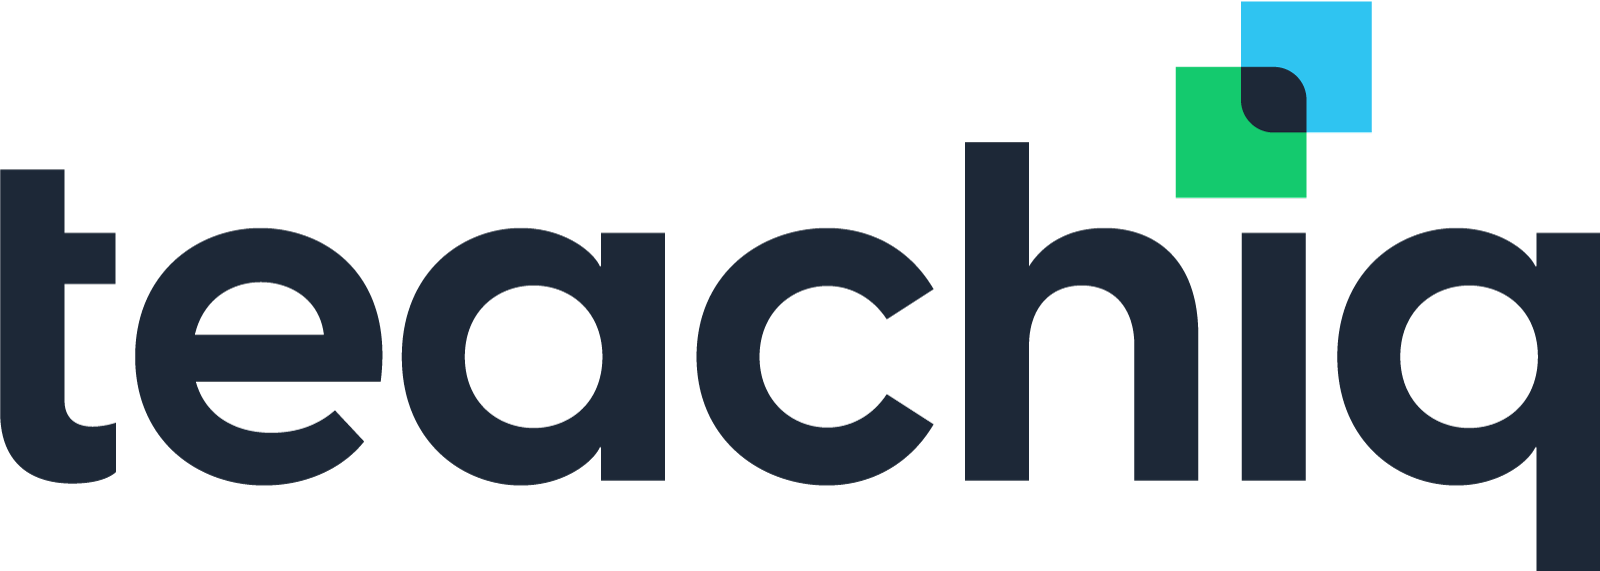 Teachiq Logo